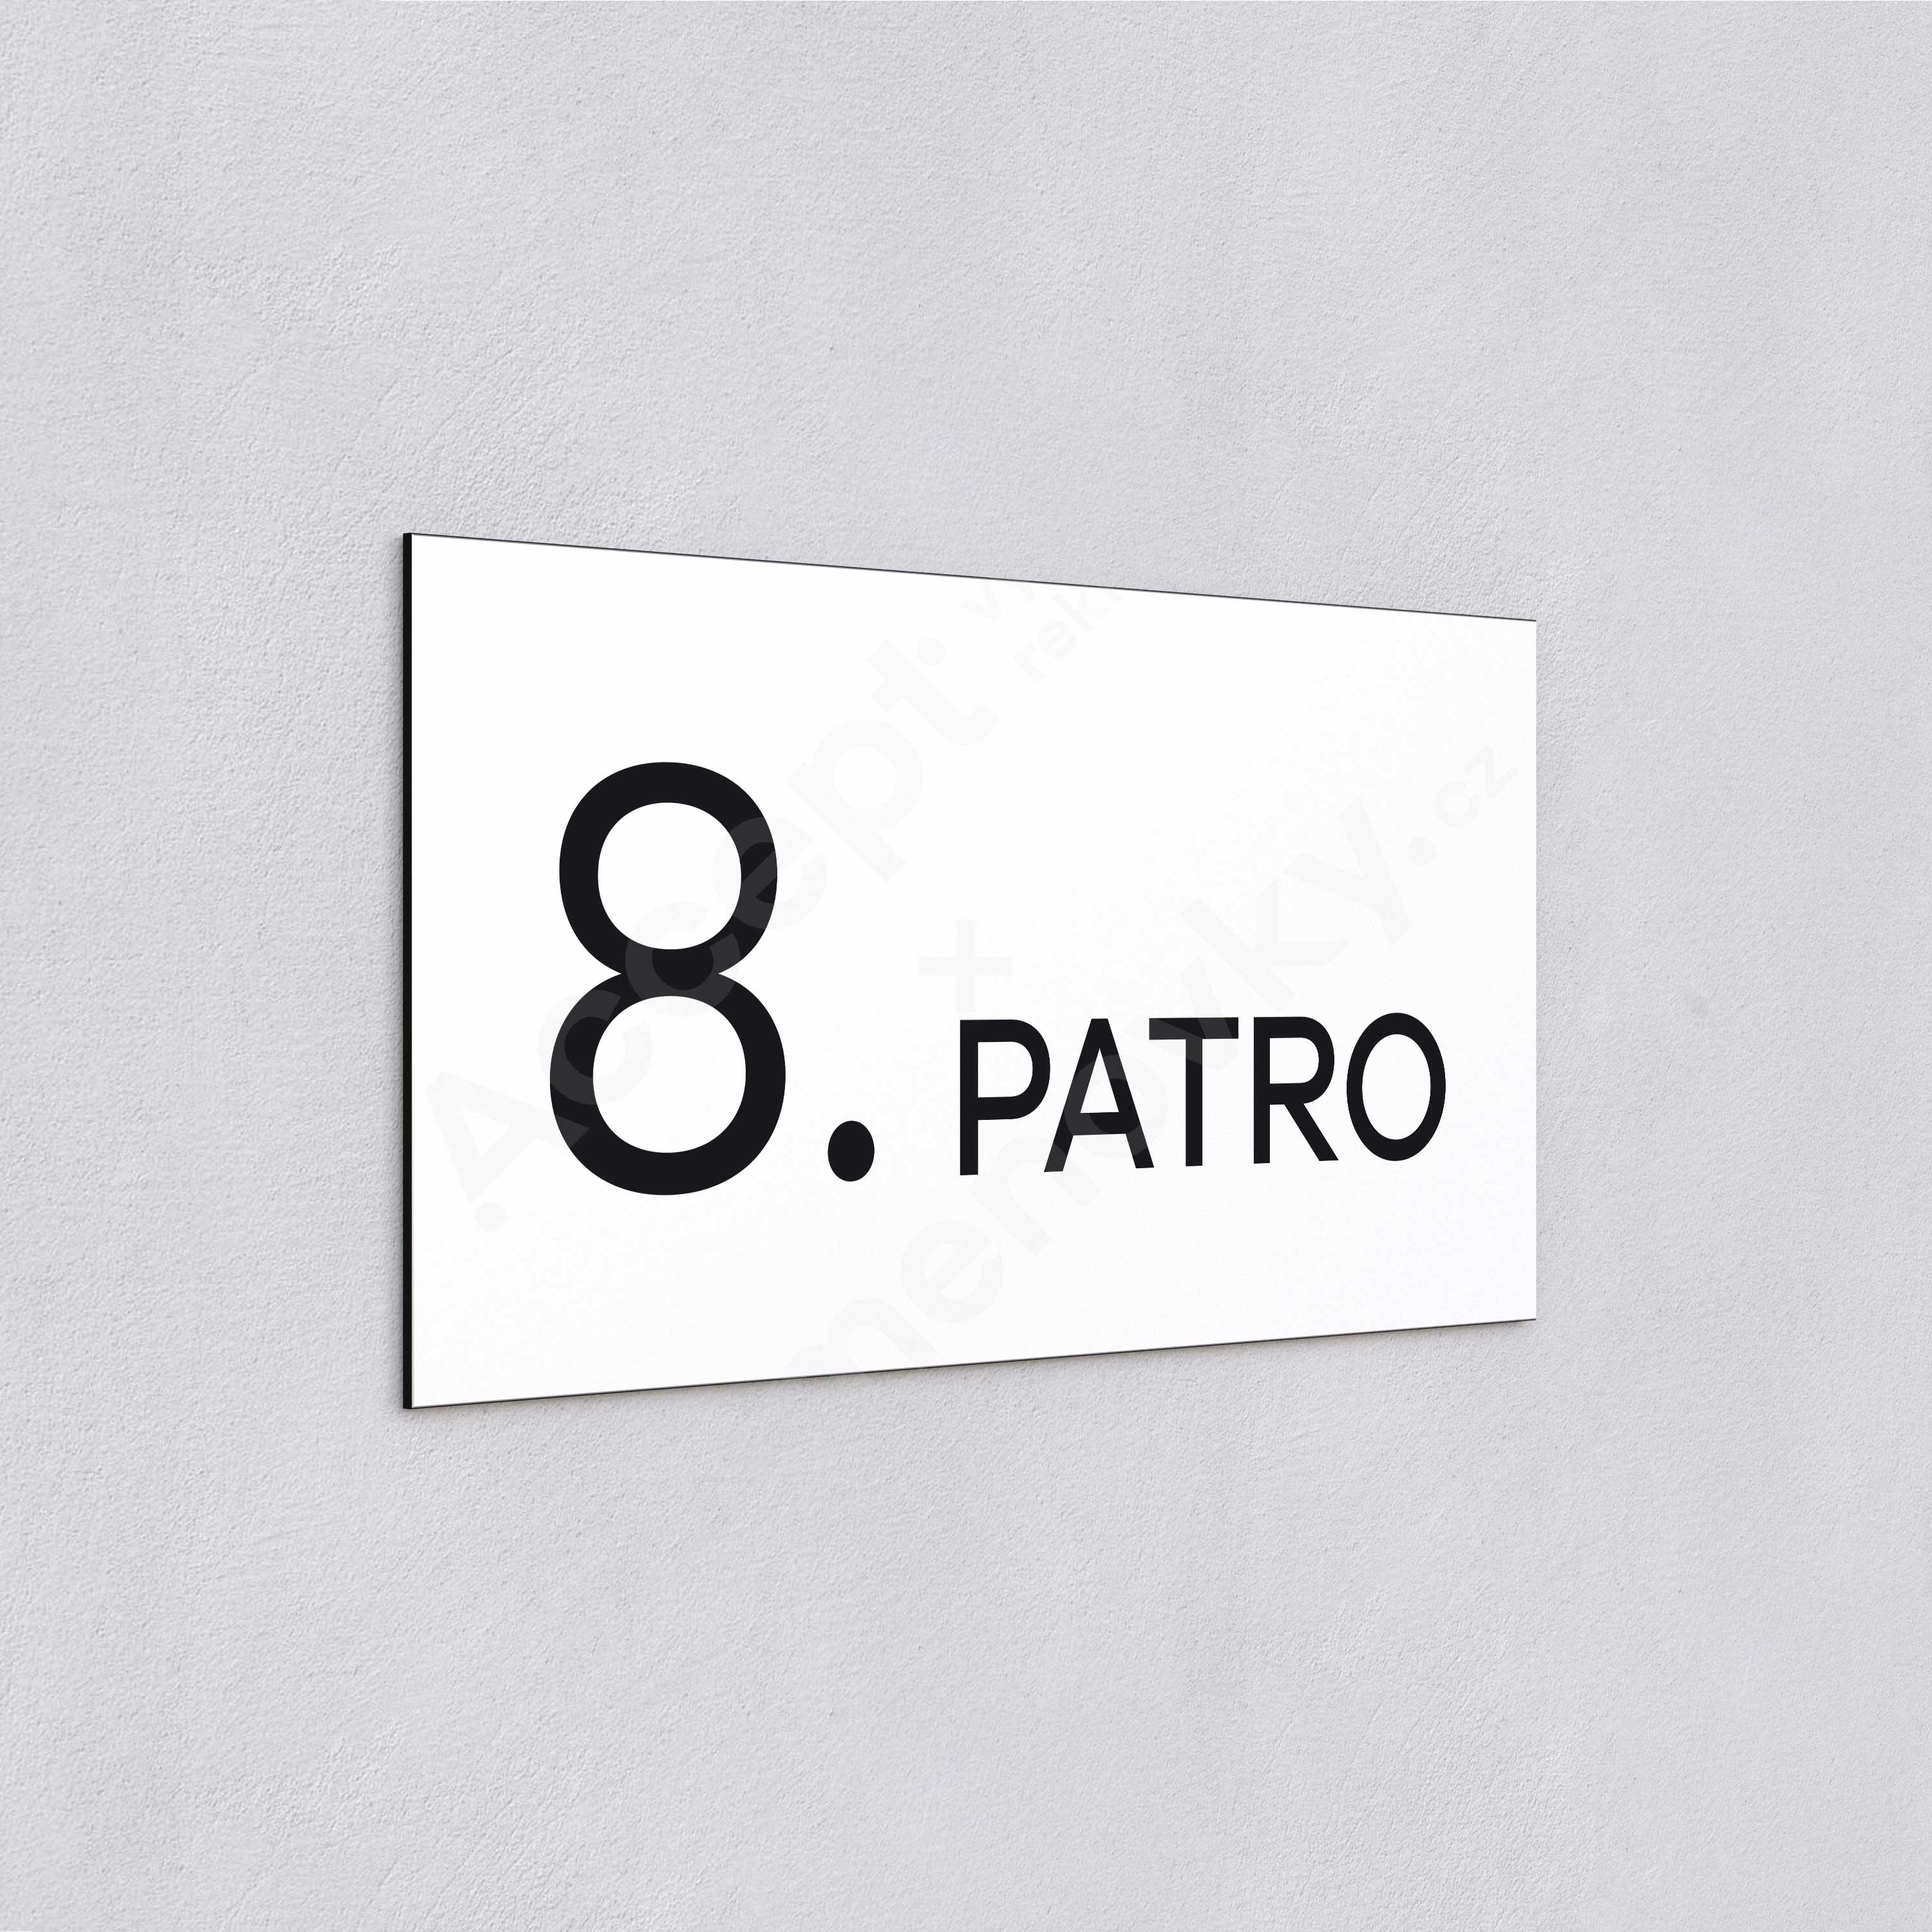 Označení podlaží "8. PATRO" - bílá tabulka - černý popis